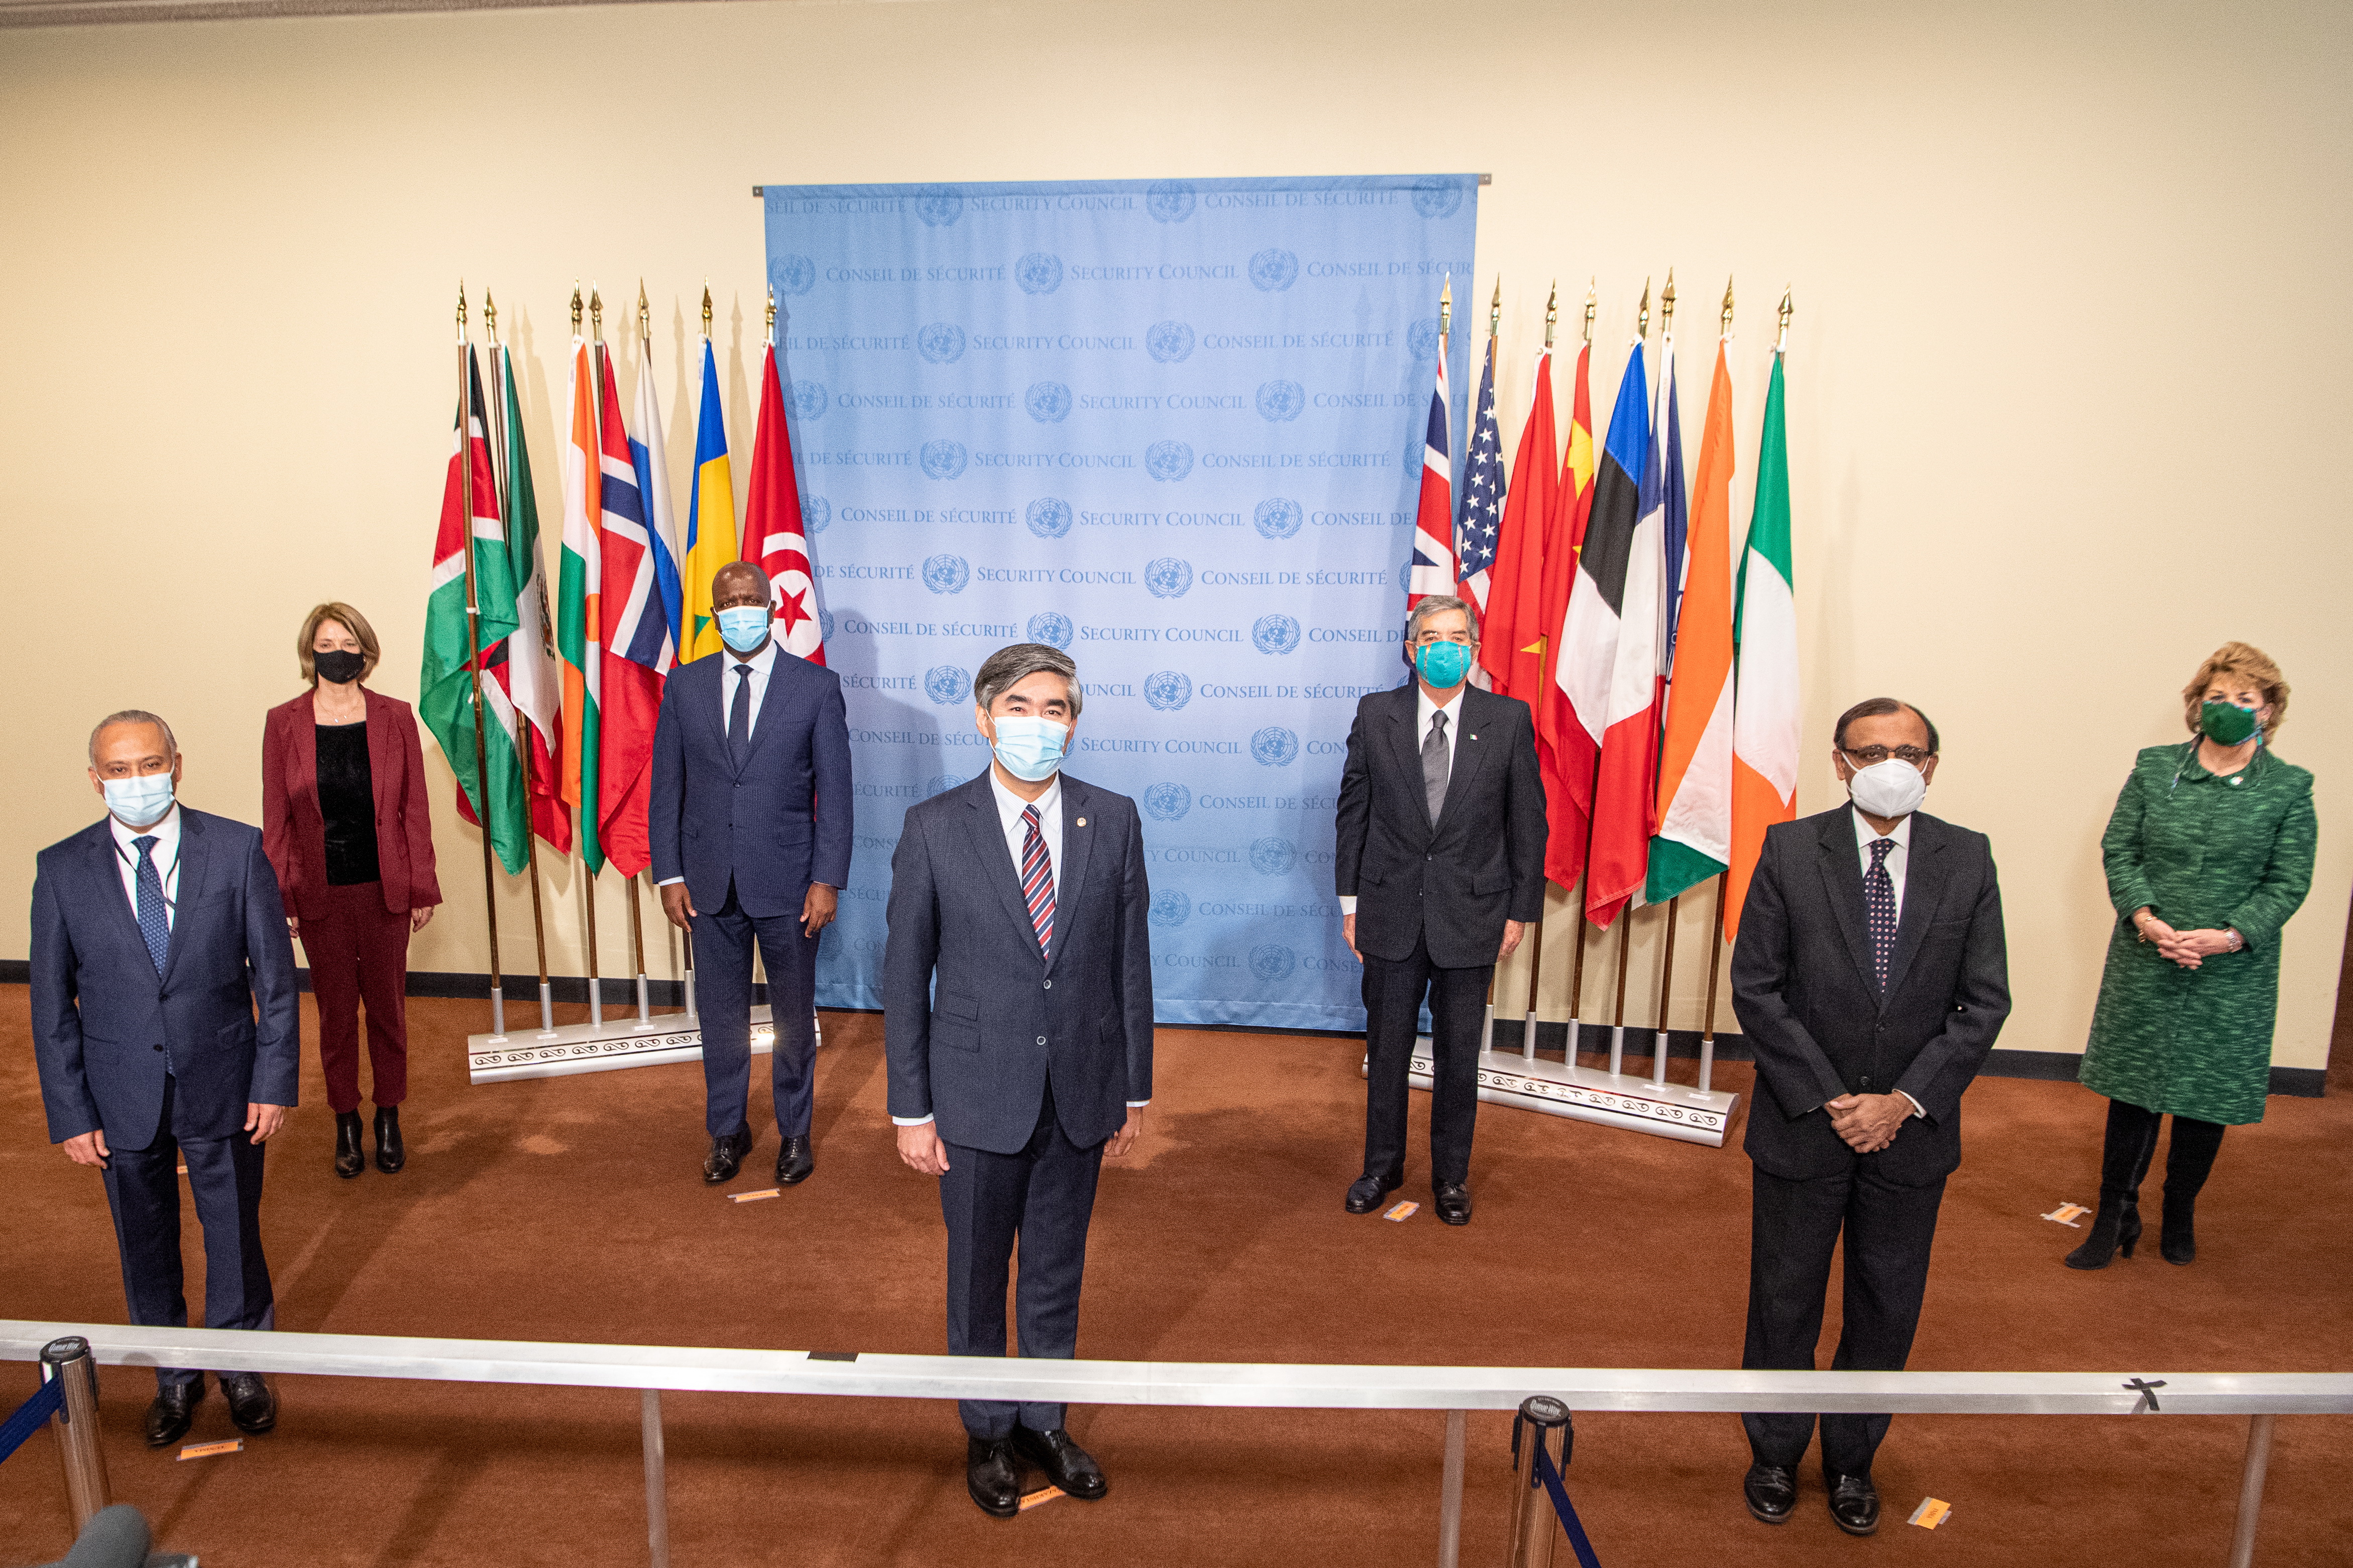 Казахстан провел церемонию установки флагов новых членов Совета Безопасности ООН в Нью-Йорке   